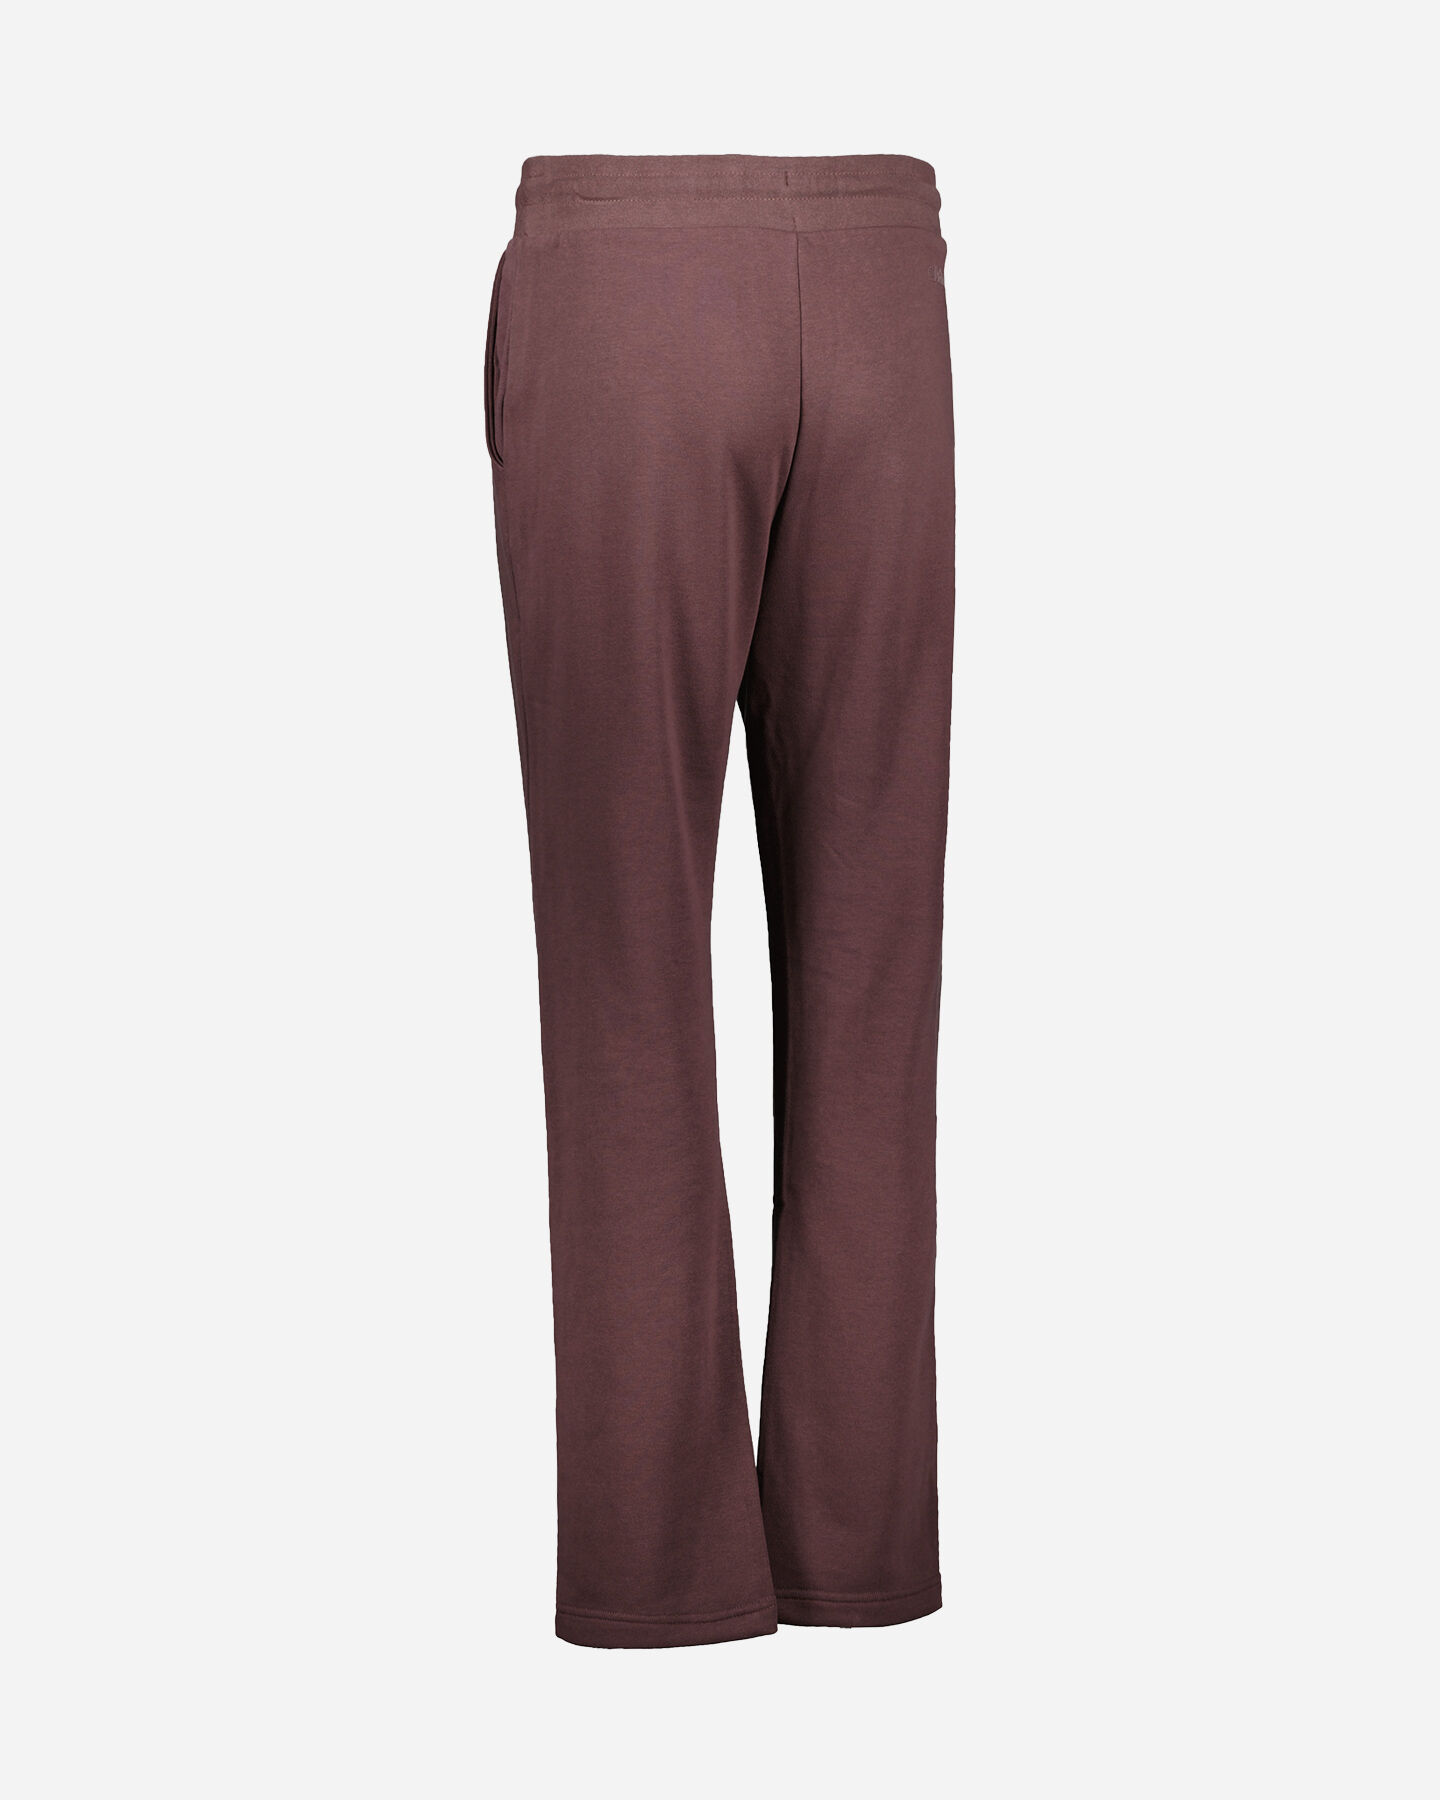  Pantalone ADMIRAL CLASSIC W S4106256|297|L scatto 2